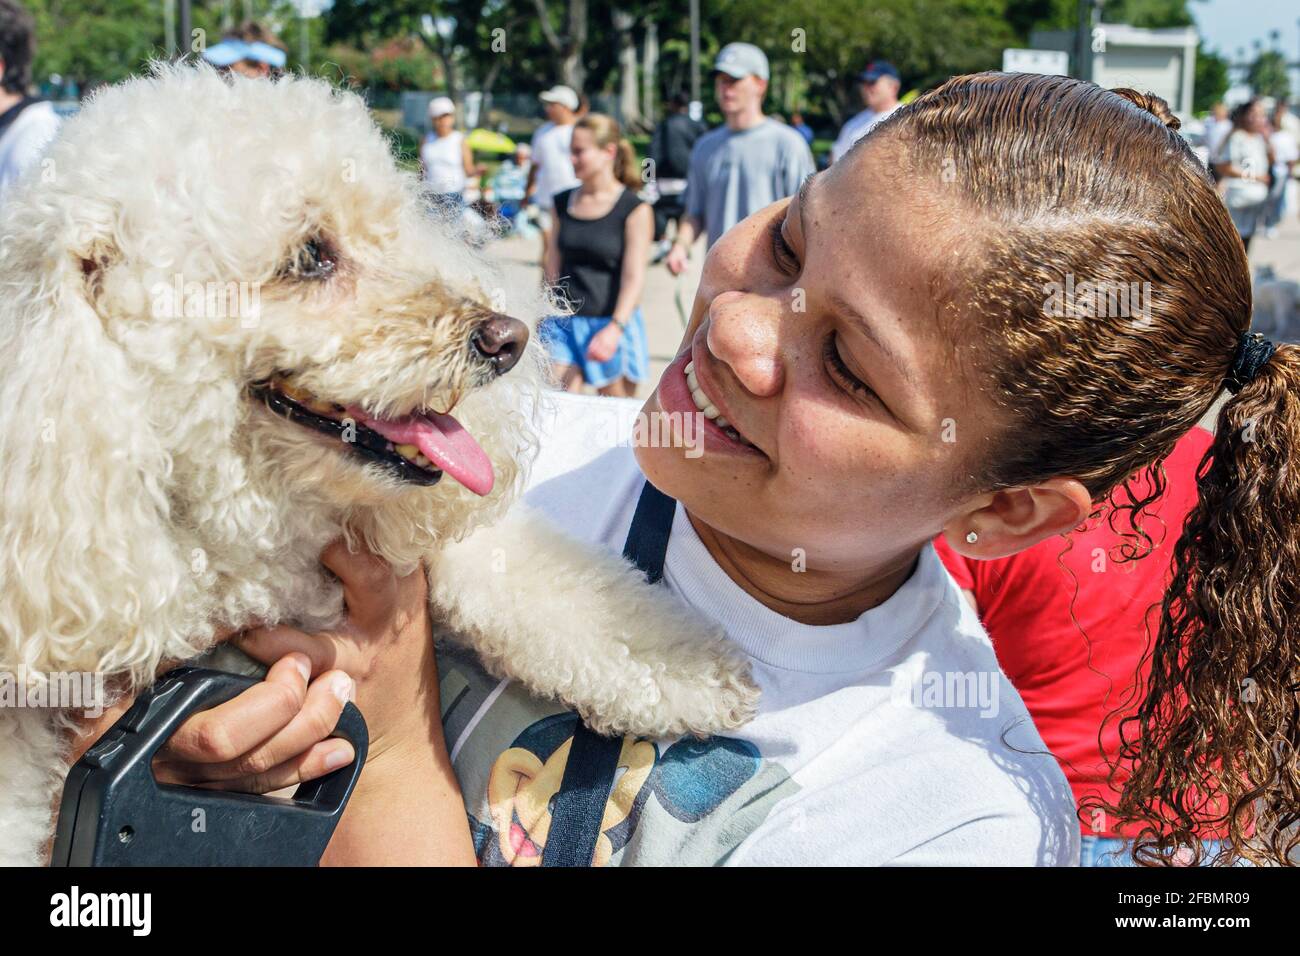 Miami Florida, Bayfront Park Walk für die Tiere, Humane Society Fundraising Event Hunde, Schwarzes Mädchen weiblich Kind Student freiwillig umarmt halten Hund, Stockfoto